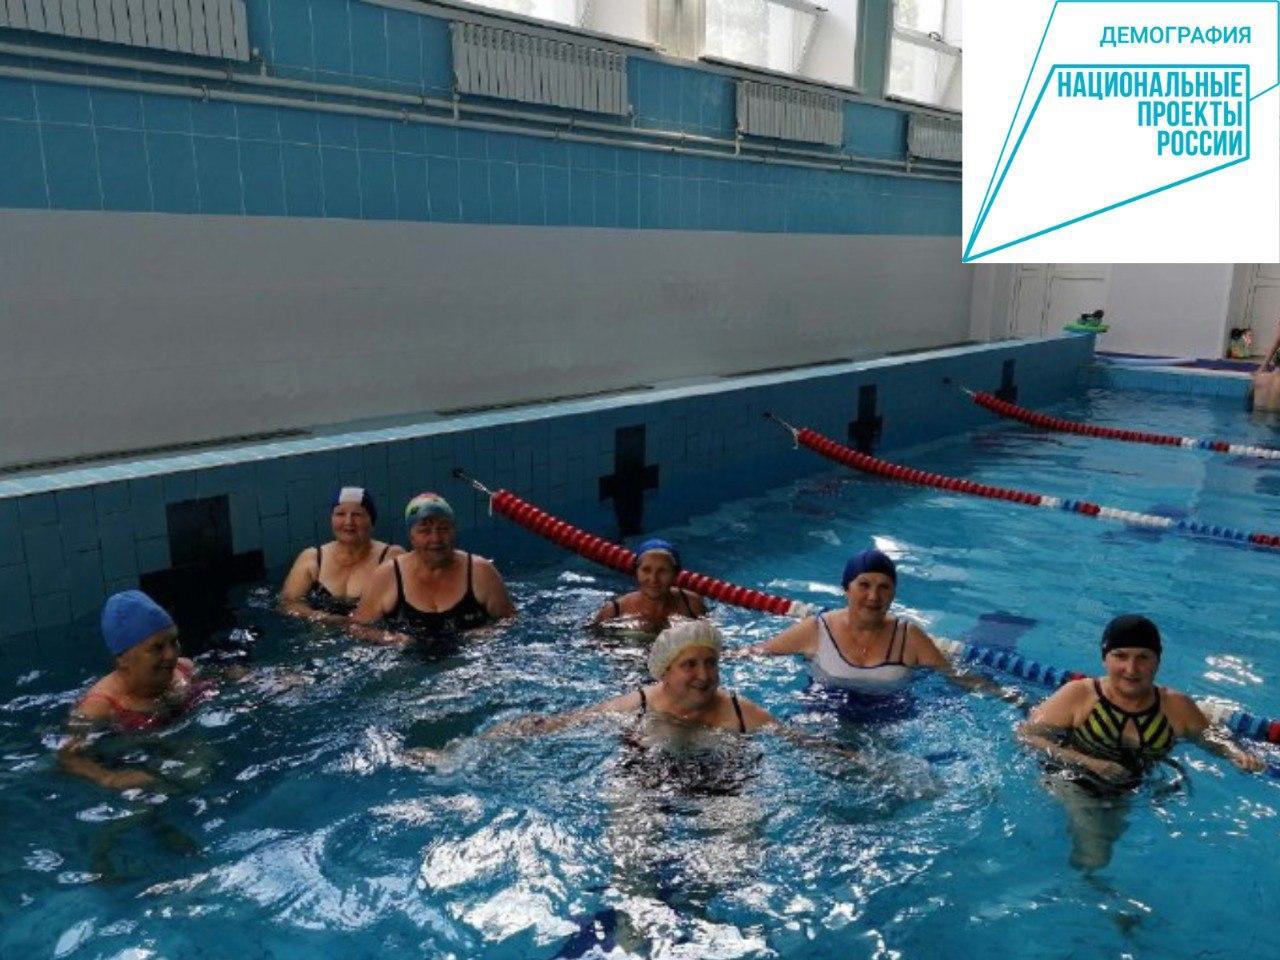 Пожилые брянцы устроили заплыв в бассейне спорткомплекса «Десна» в Жуковке